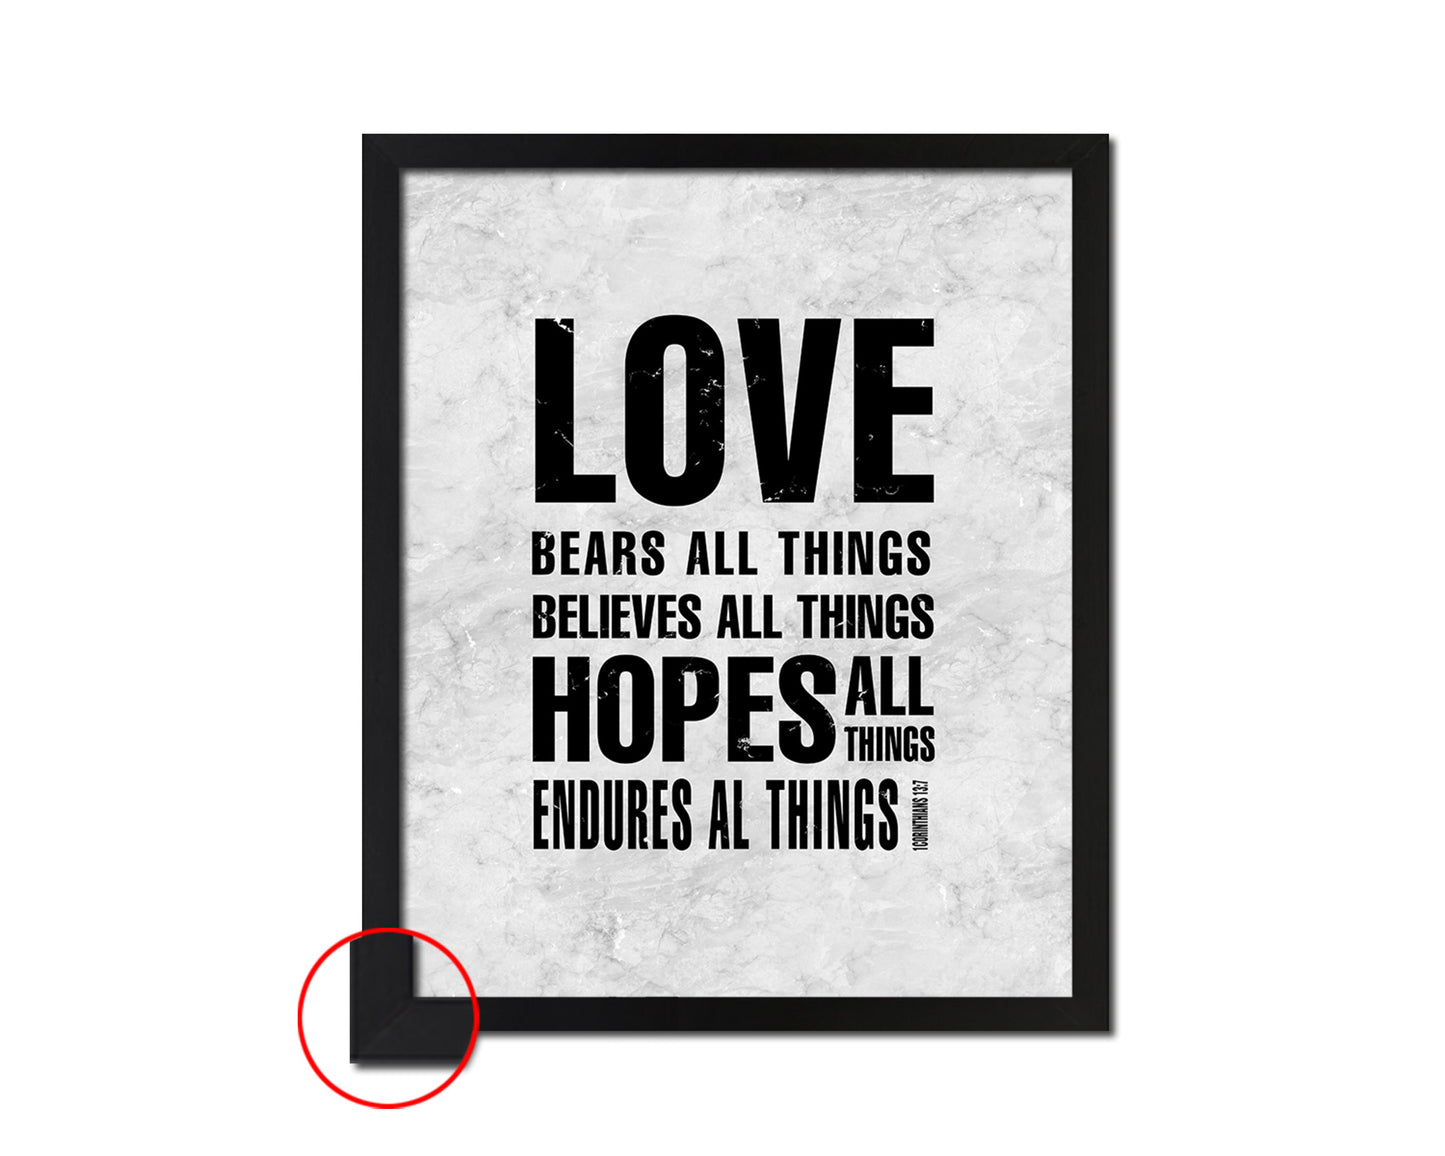 Love bears all things believes all things hopes all things endures all things Quote Framed Art